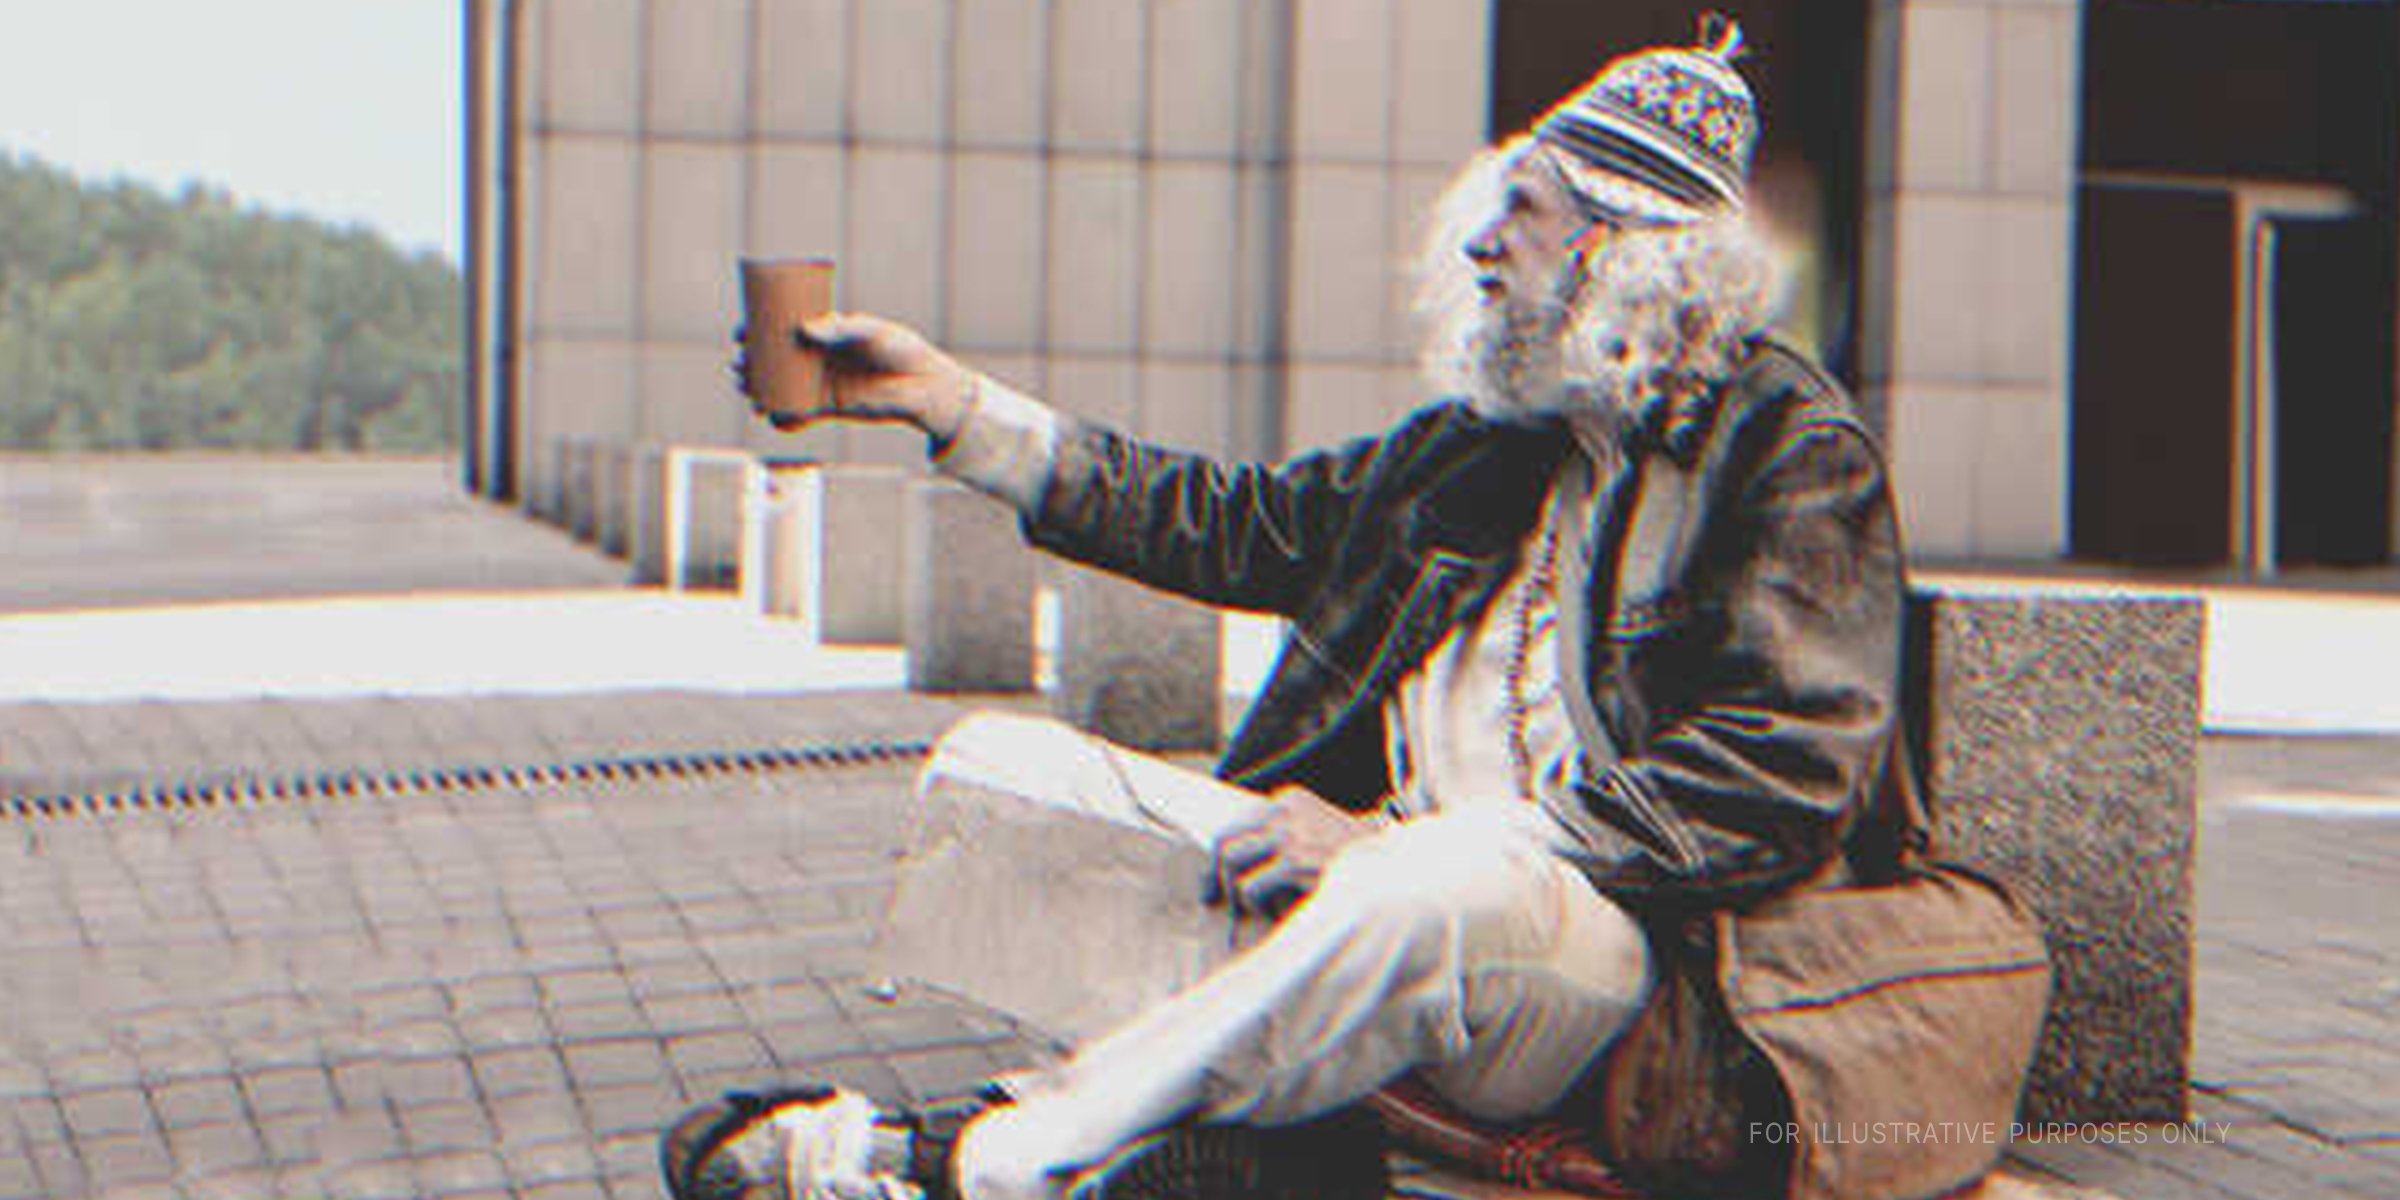 Un indigente sentado en la calle. | Foto: Shutterstock